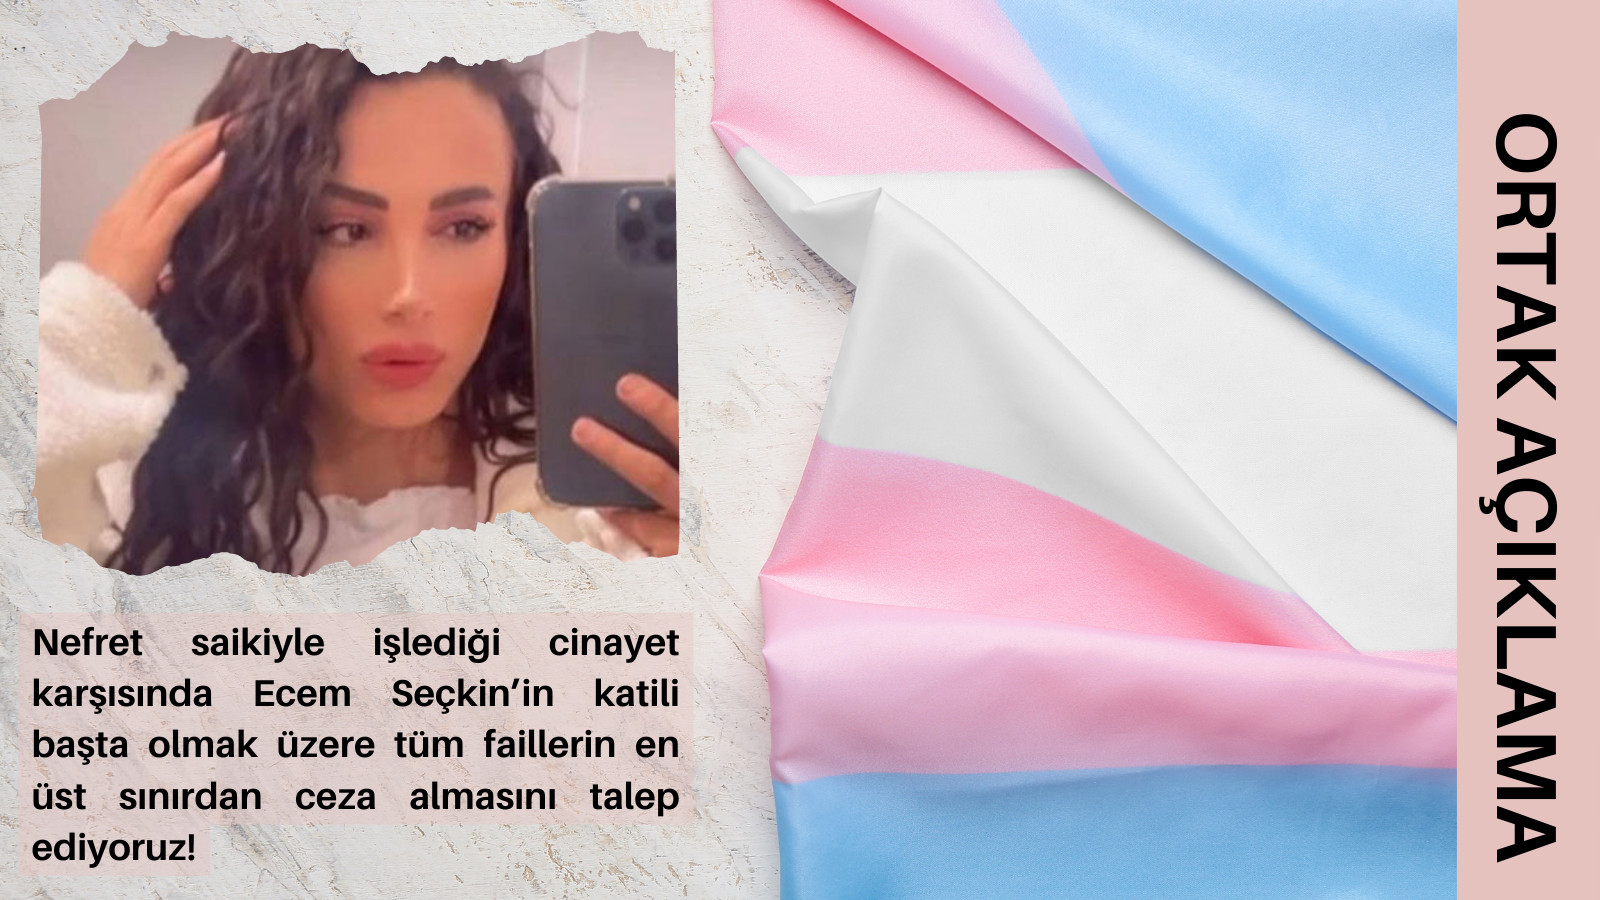 “Varoluşlarımızı kriminalize ederek trans cinayetlerinin önüne geçemezsiniz!” | Kaos GL - LGBTİ+ Haber Portalı Haber